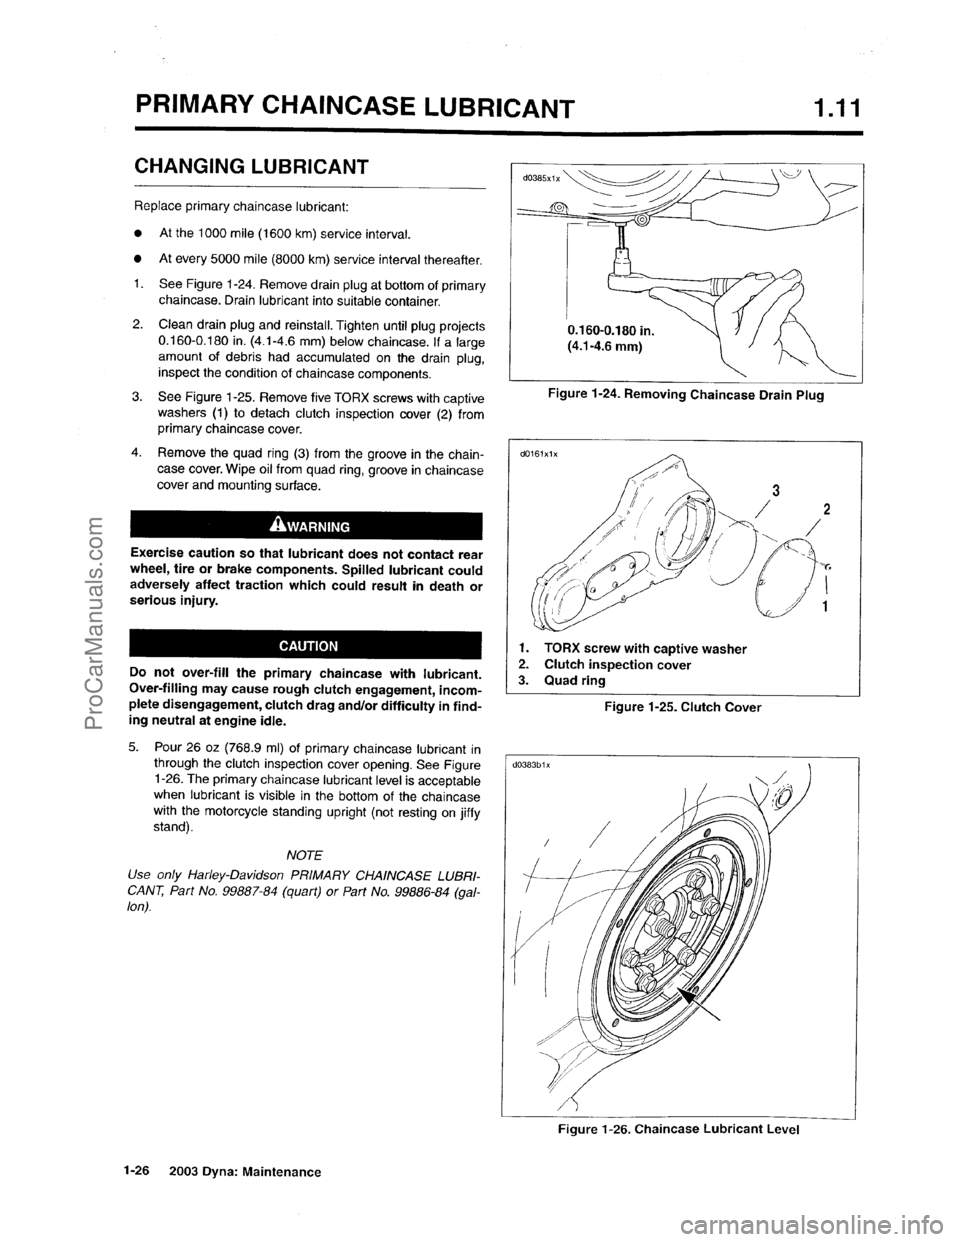 HARLEY-DAVIDSON DYNA GLIDE 2003 Workshop Manual  [28]
ProCarManuals.com 